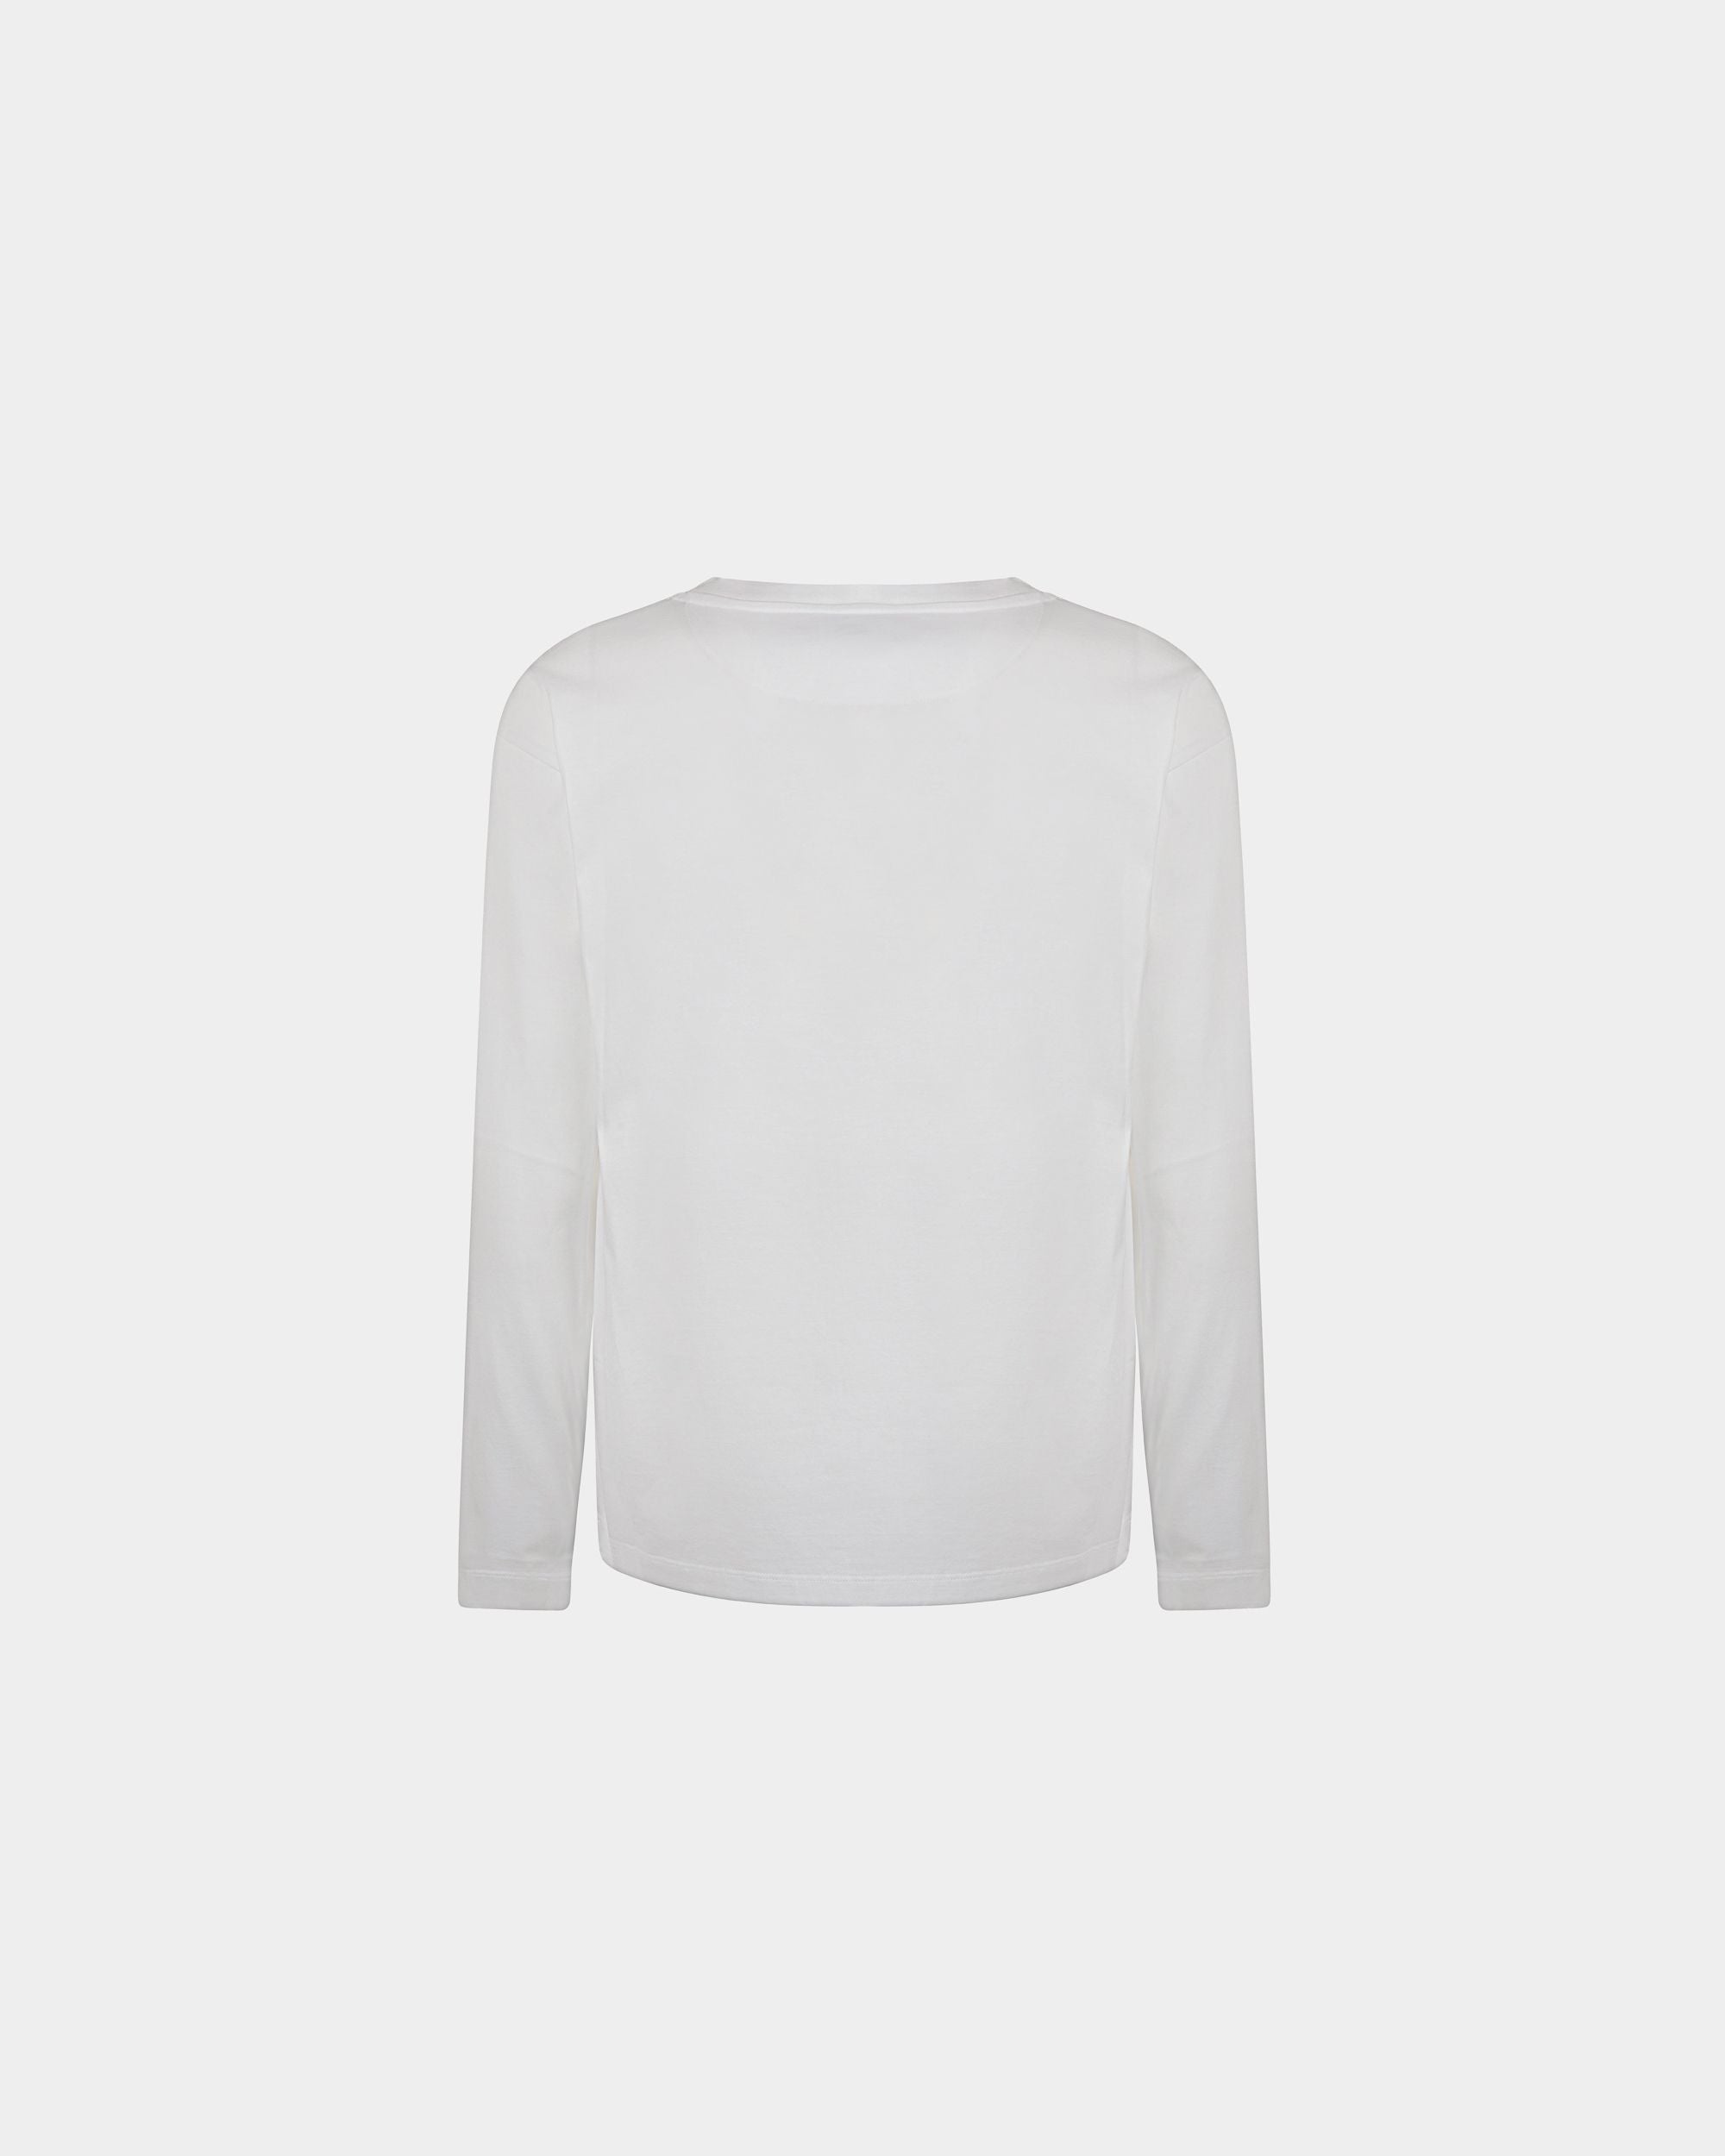 Men's T-Shirt in White Cotton | Bally | Still Life Back